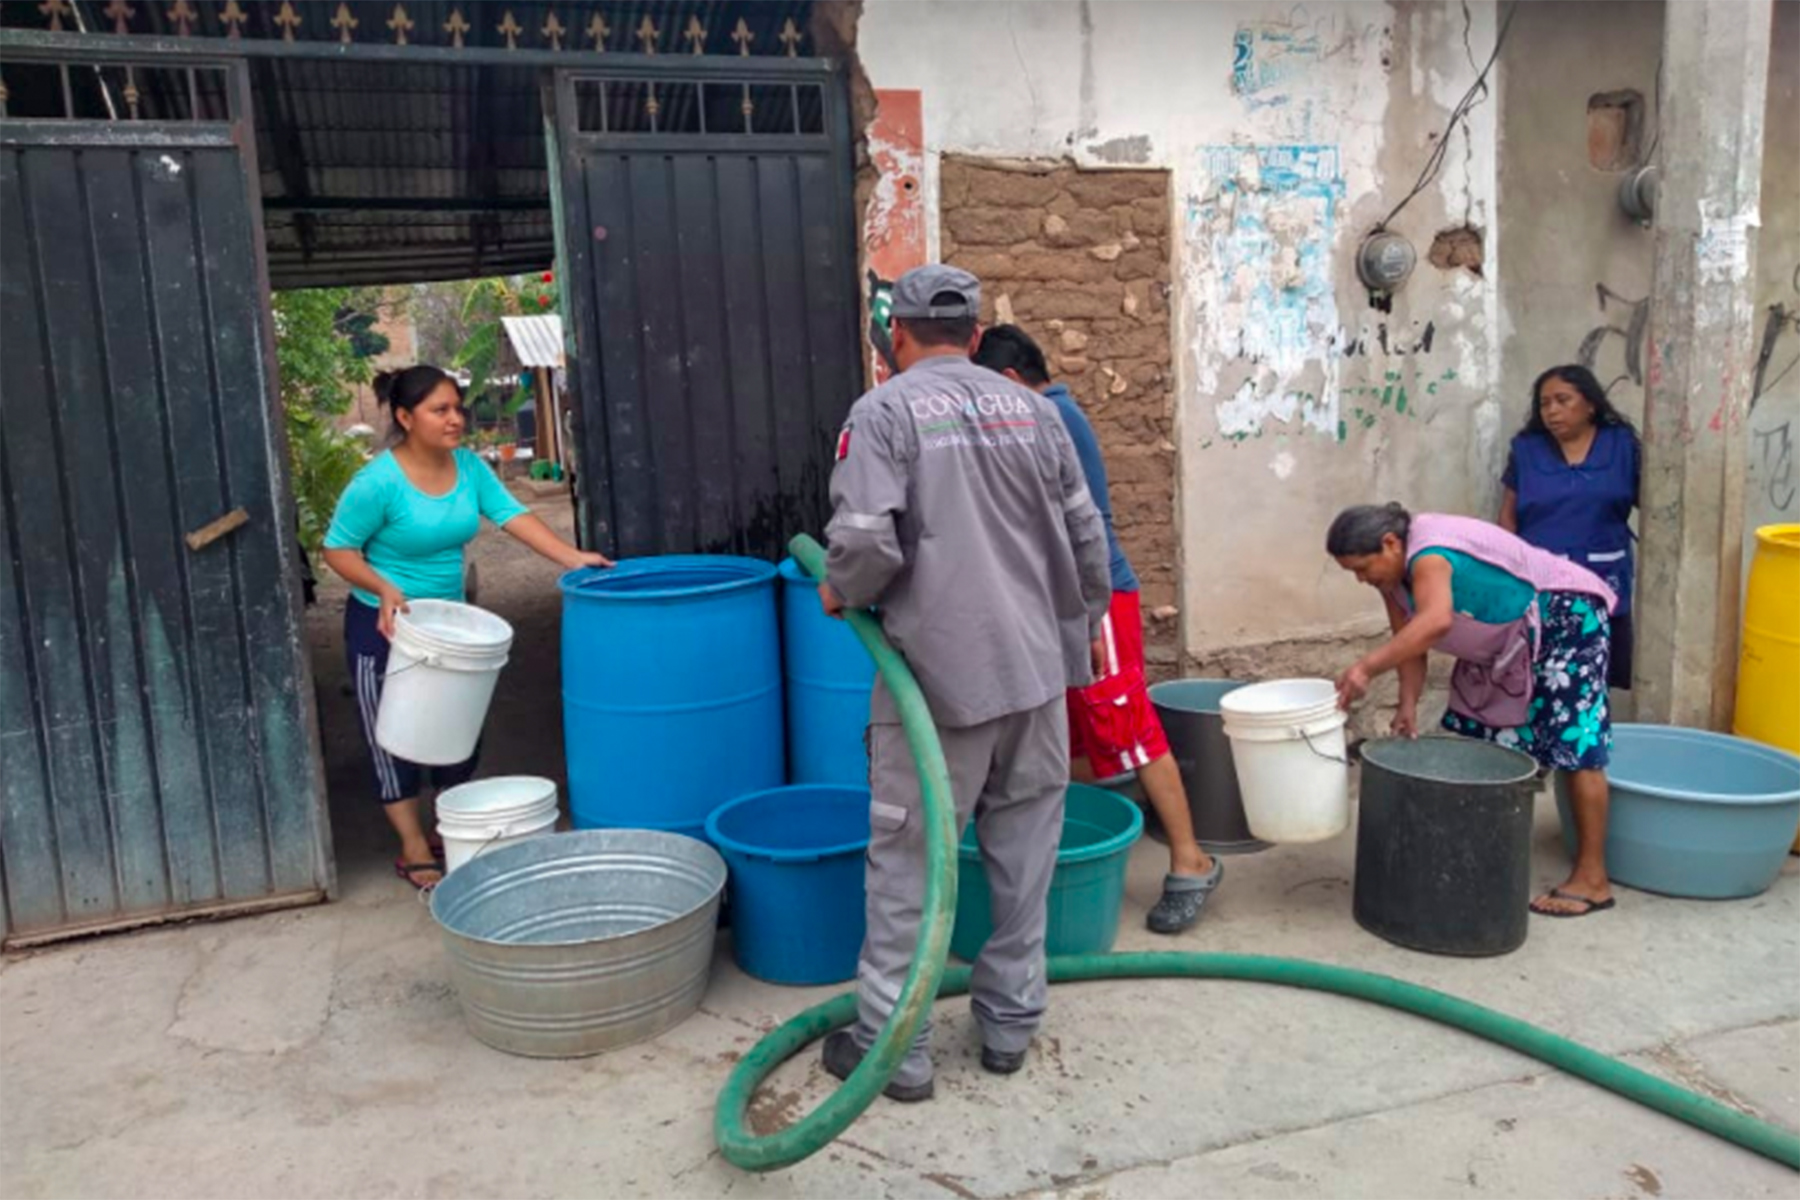 Conagua ha entregado 114 millones de litros de agua potable, en 15 entidades, a hospitales, centros de población, centros sociales e instalaciones de la Guardia Nacional, para enfrentar la contingencia sanitaria.